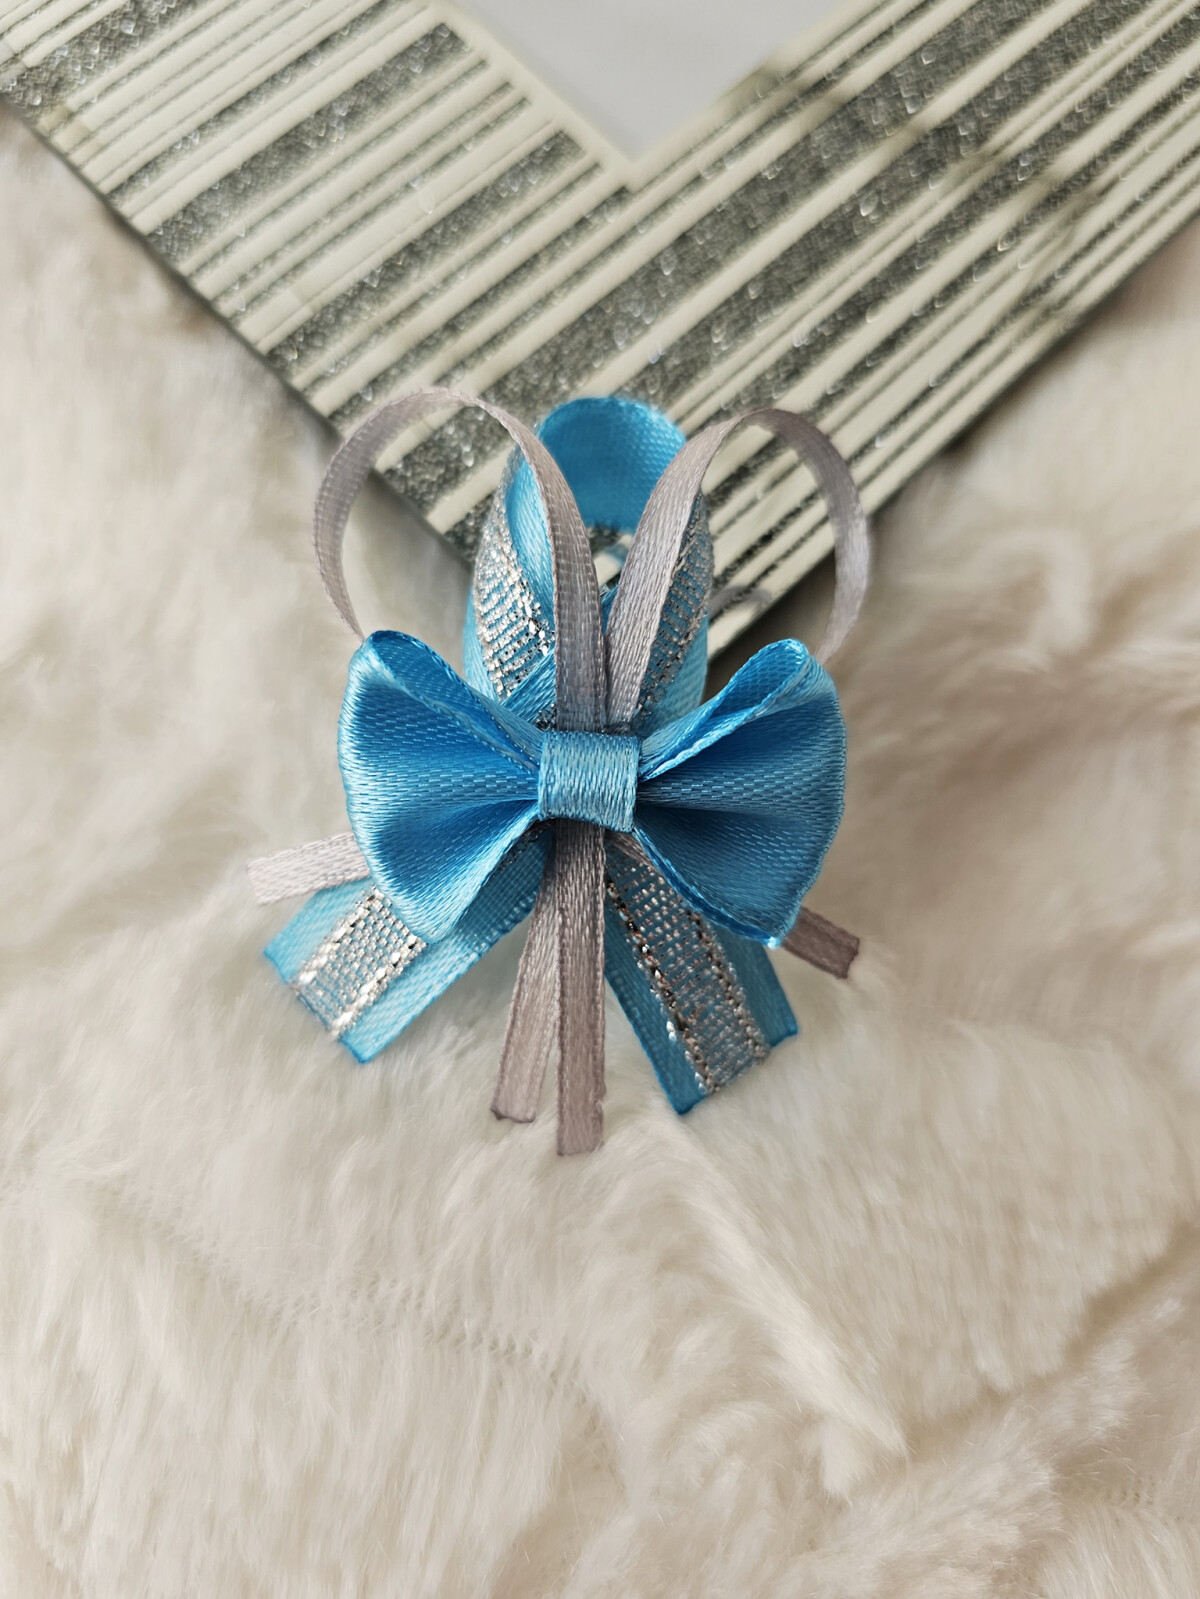 Przypinki dla gości weselnych + błękit